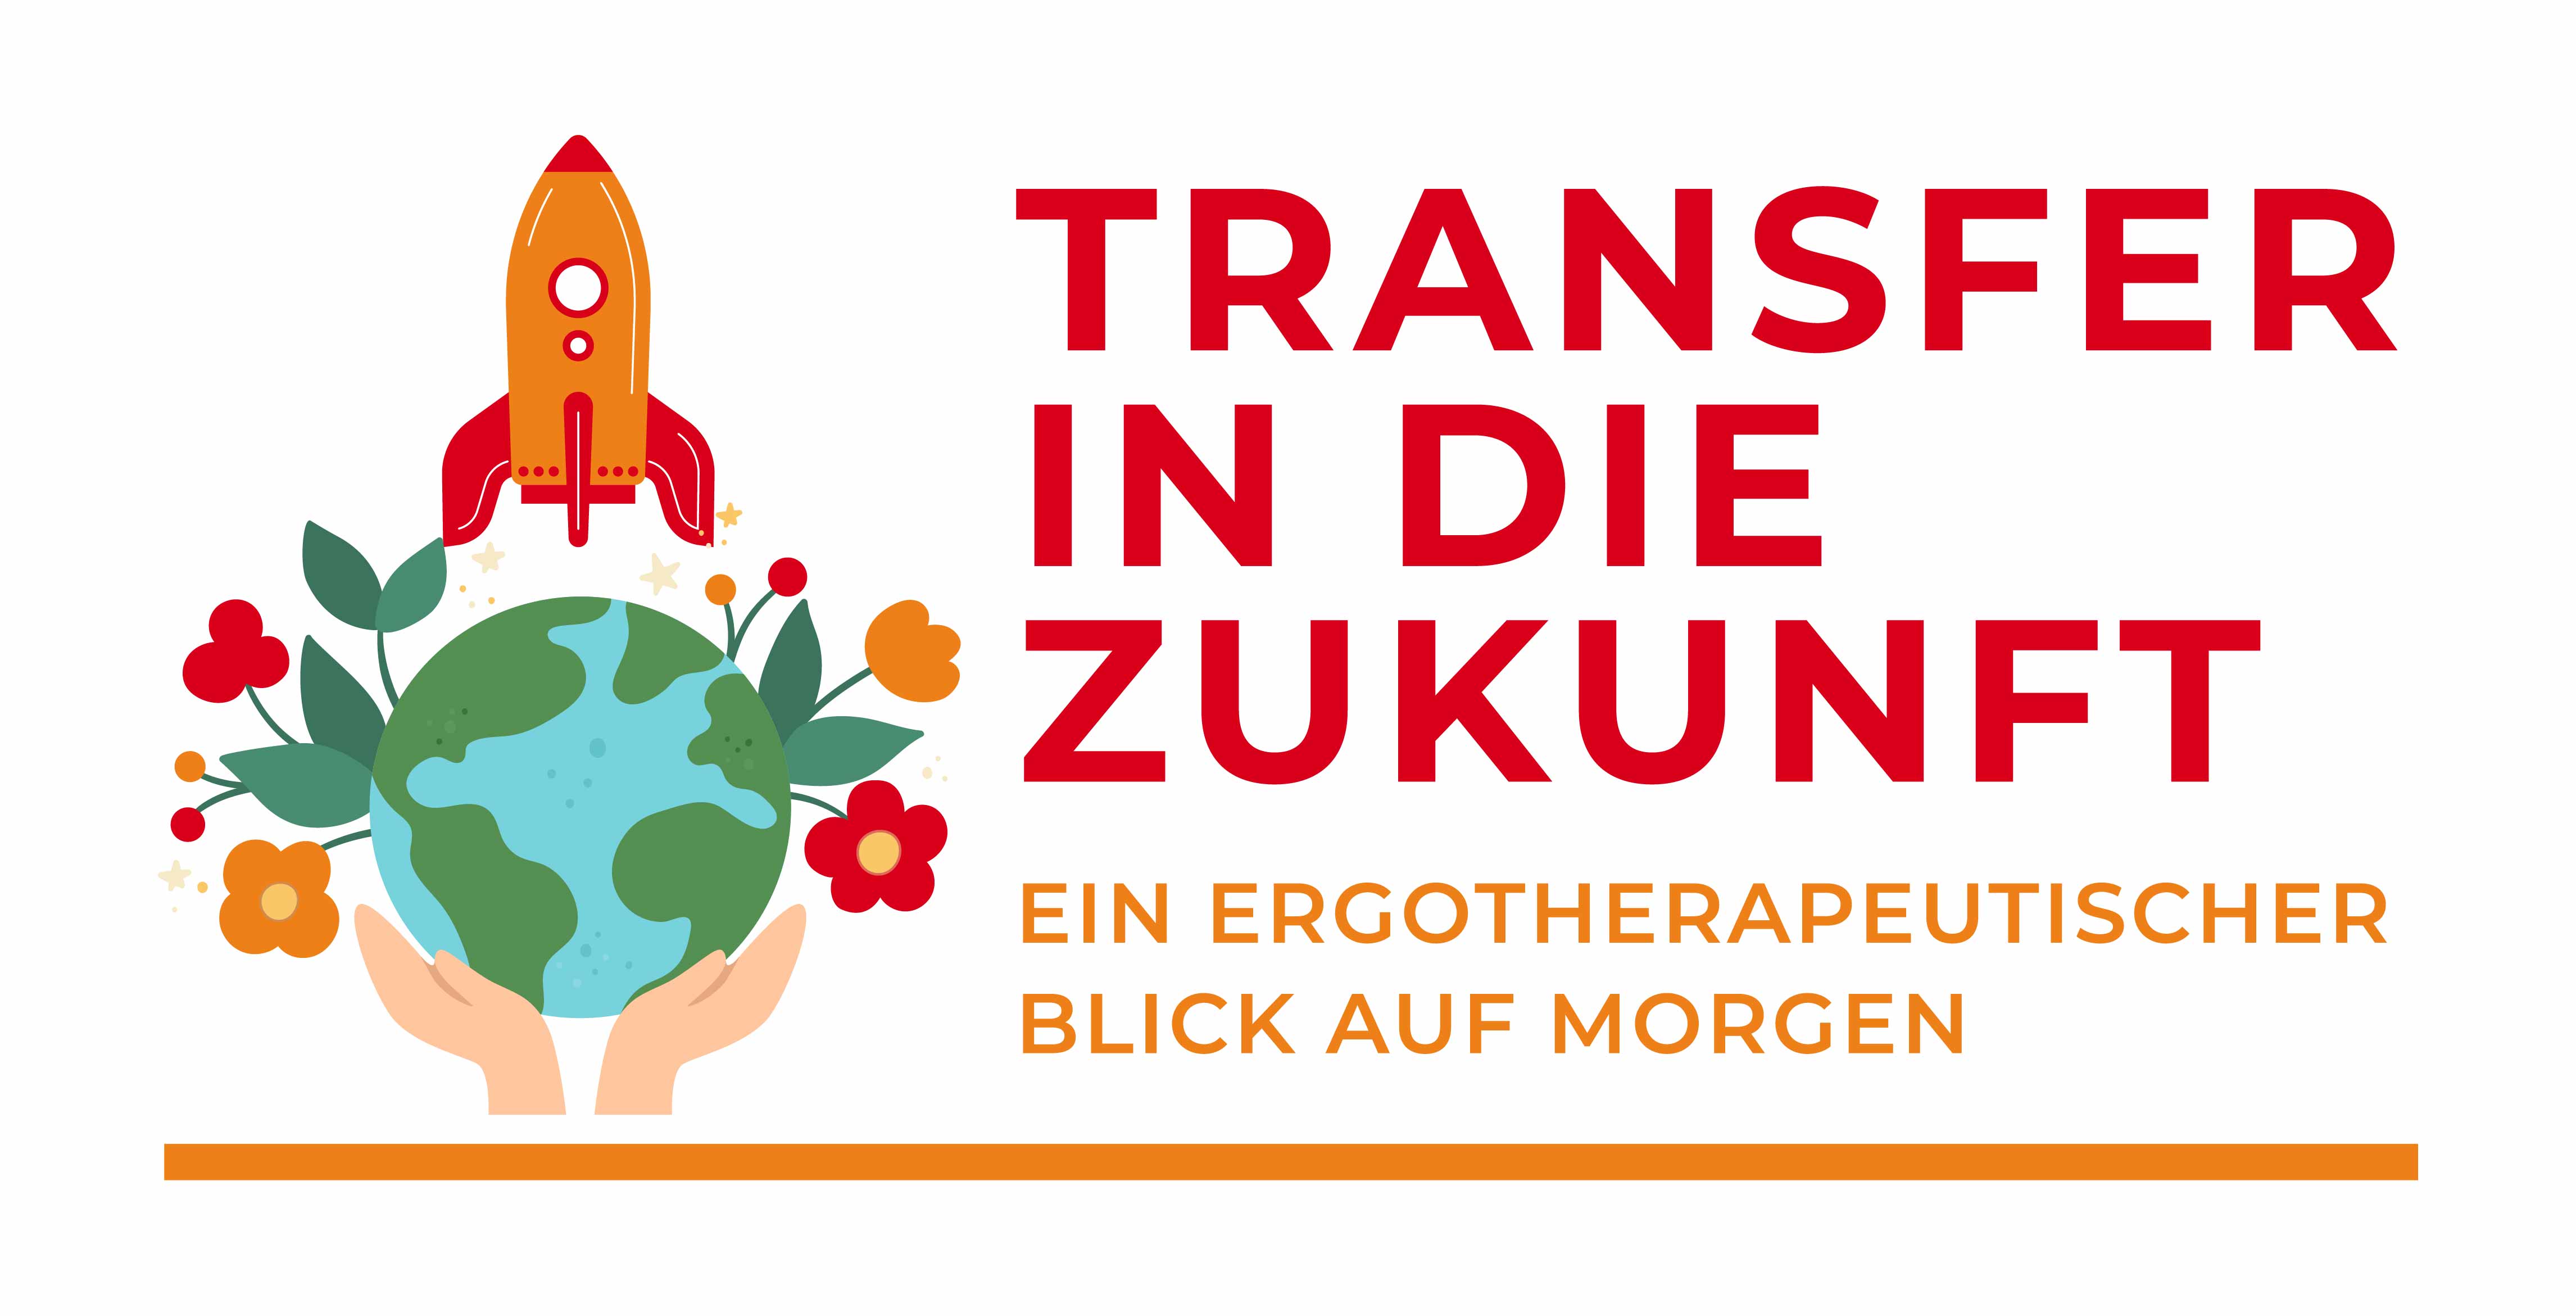 Banner "Transfer in die Zukunft - ein ergotherapeutischer Blick auf morgen"